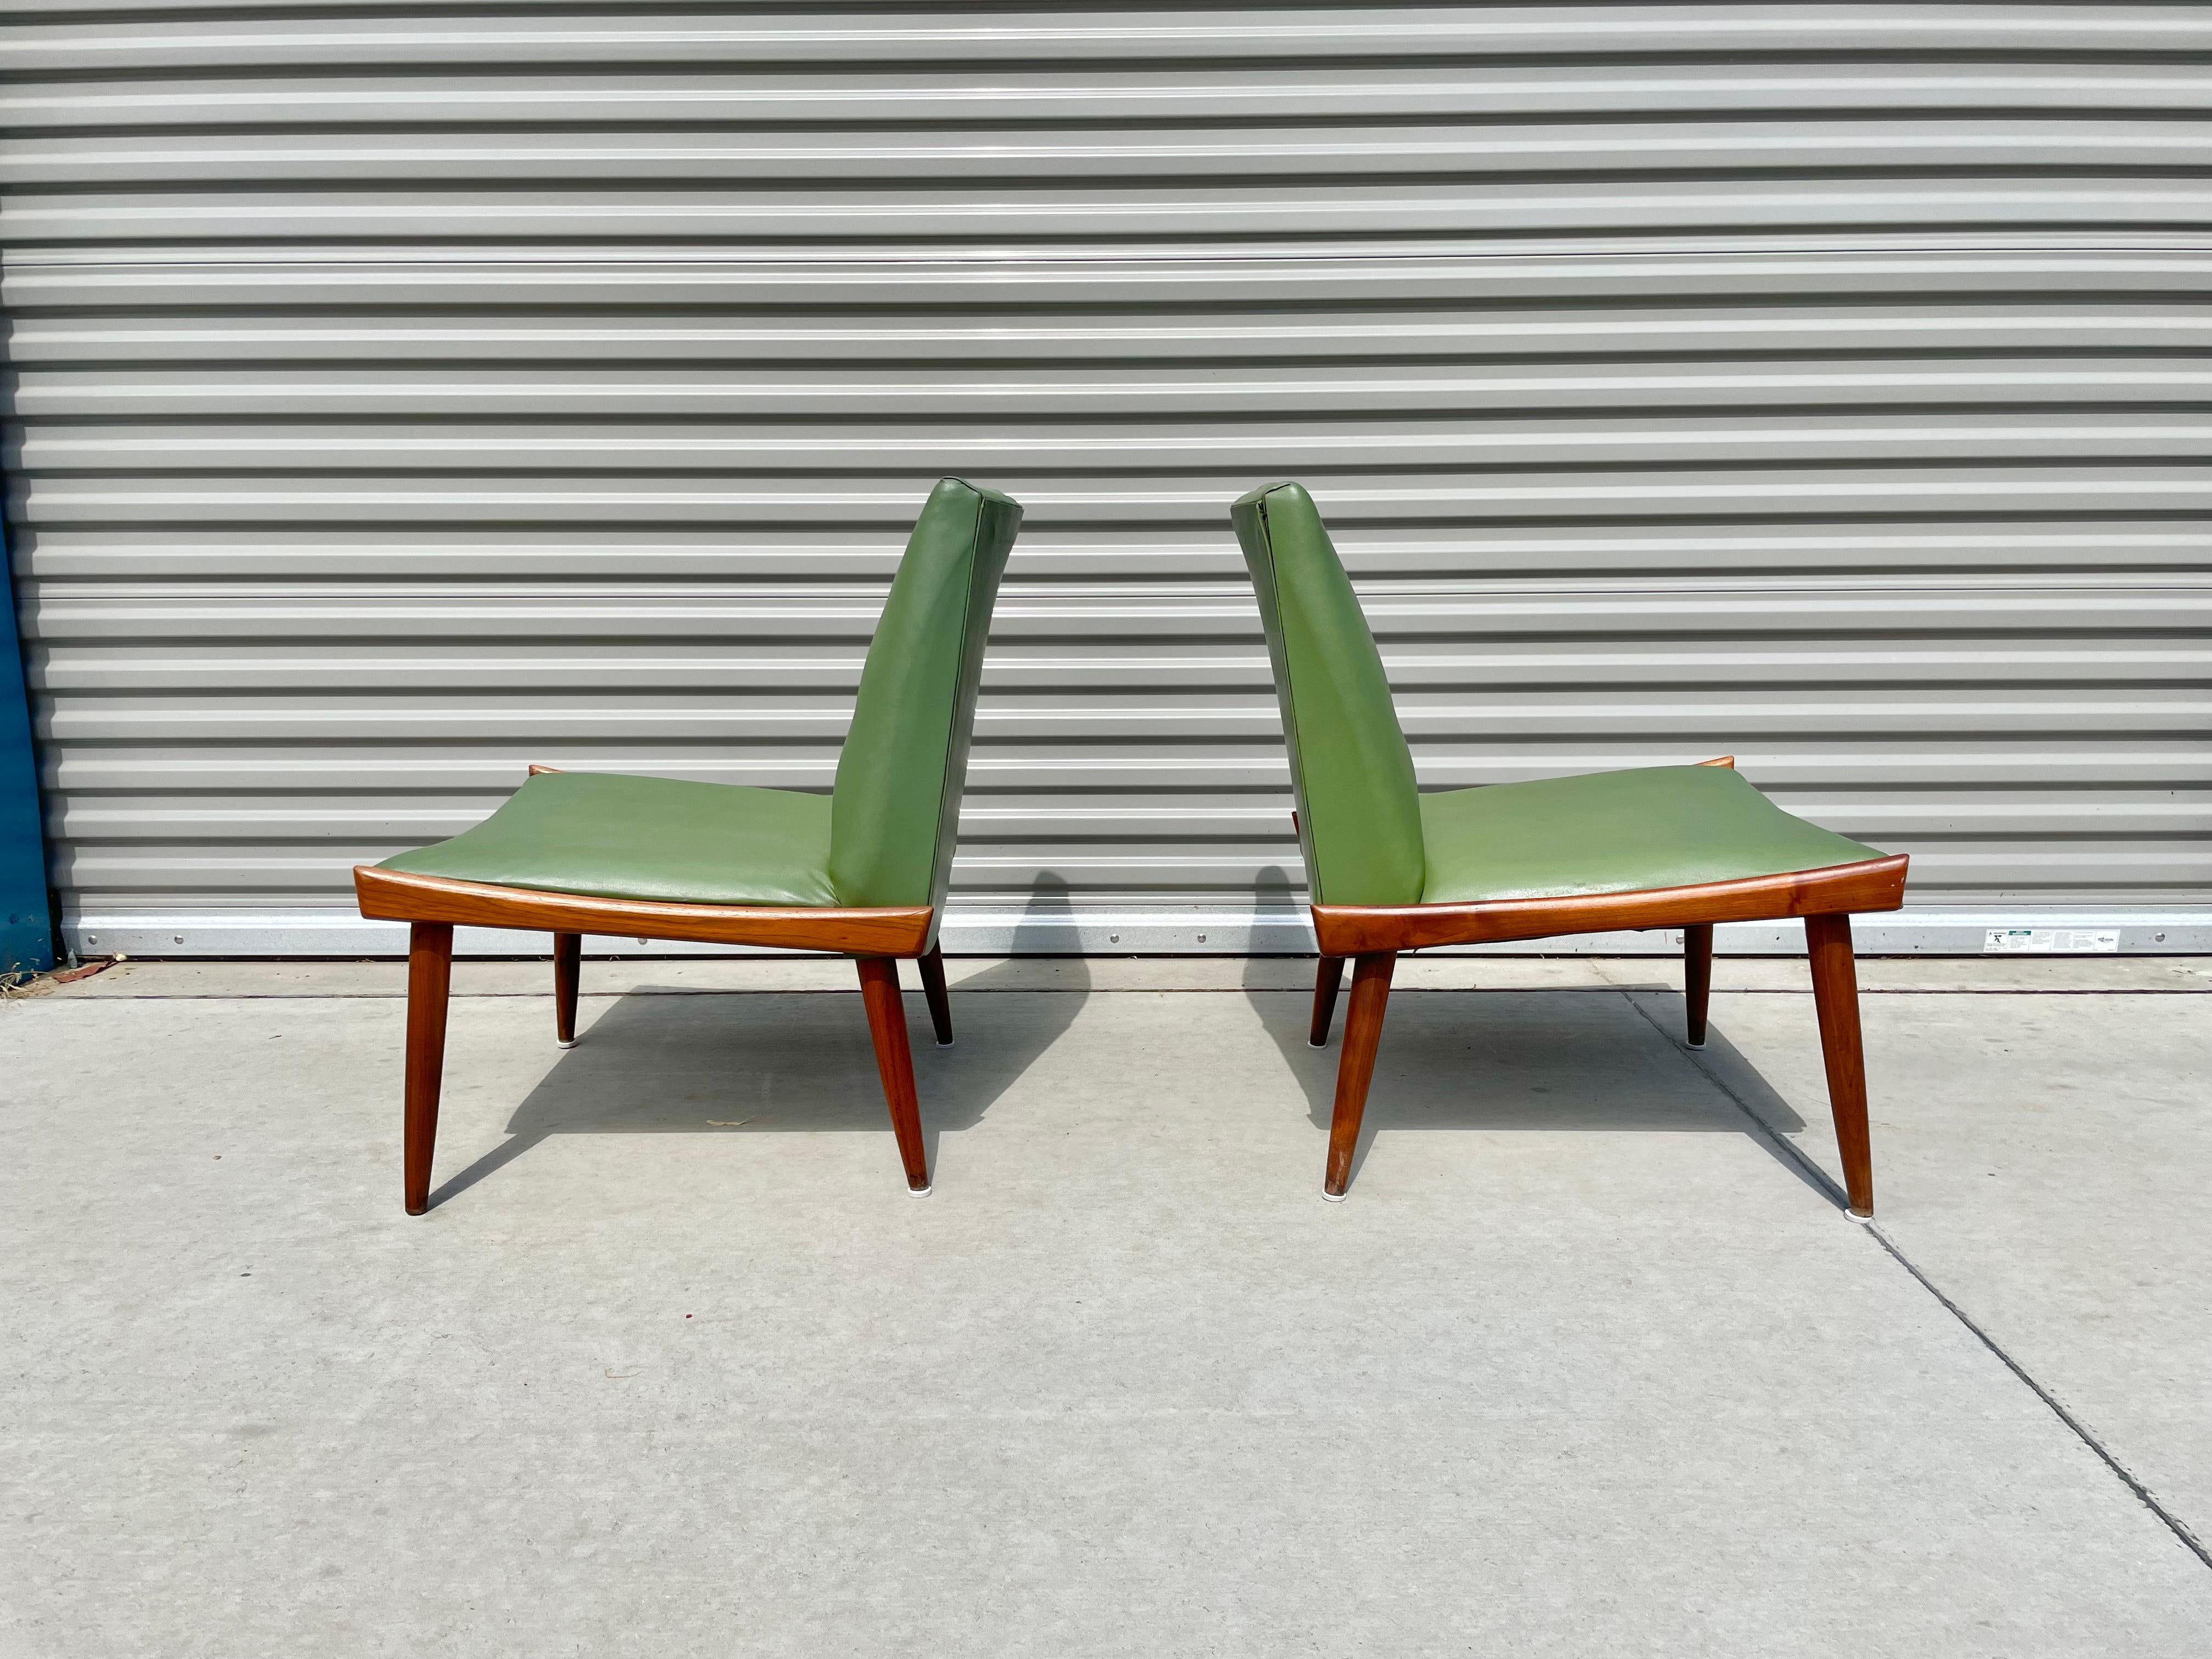 American Midcentury Slipper Chairs by Kroehler Mfg Co.